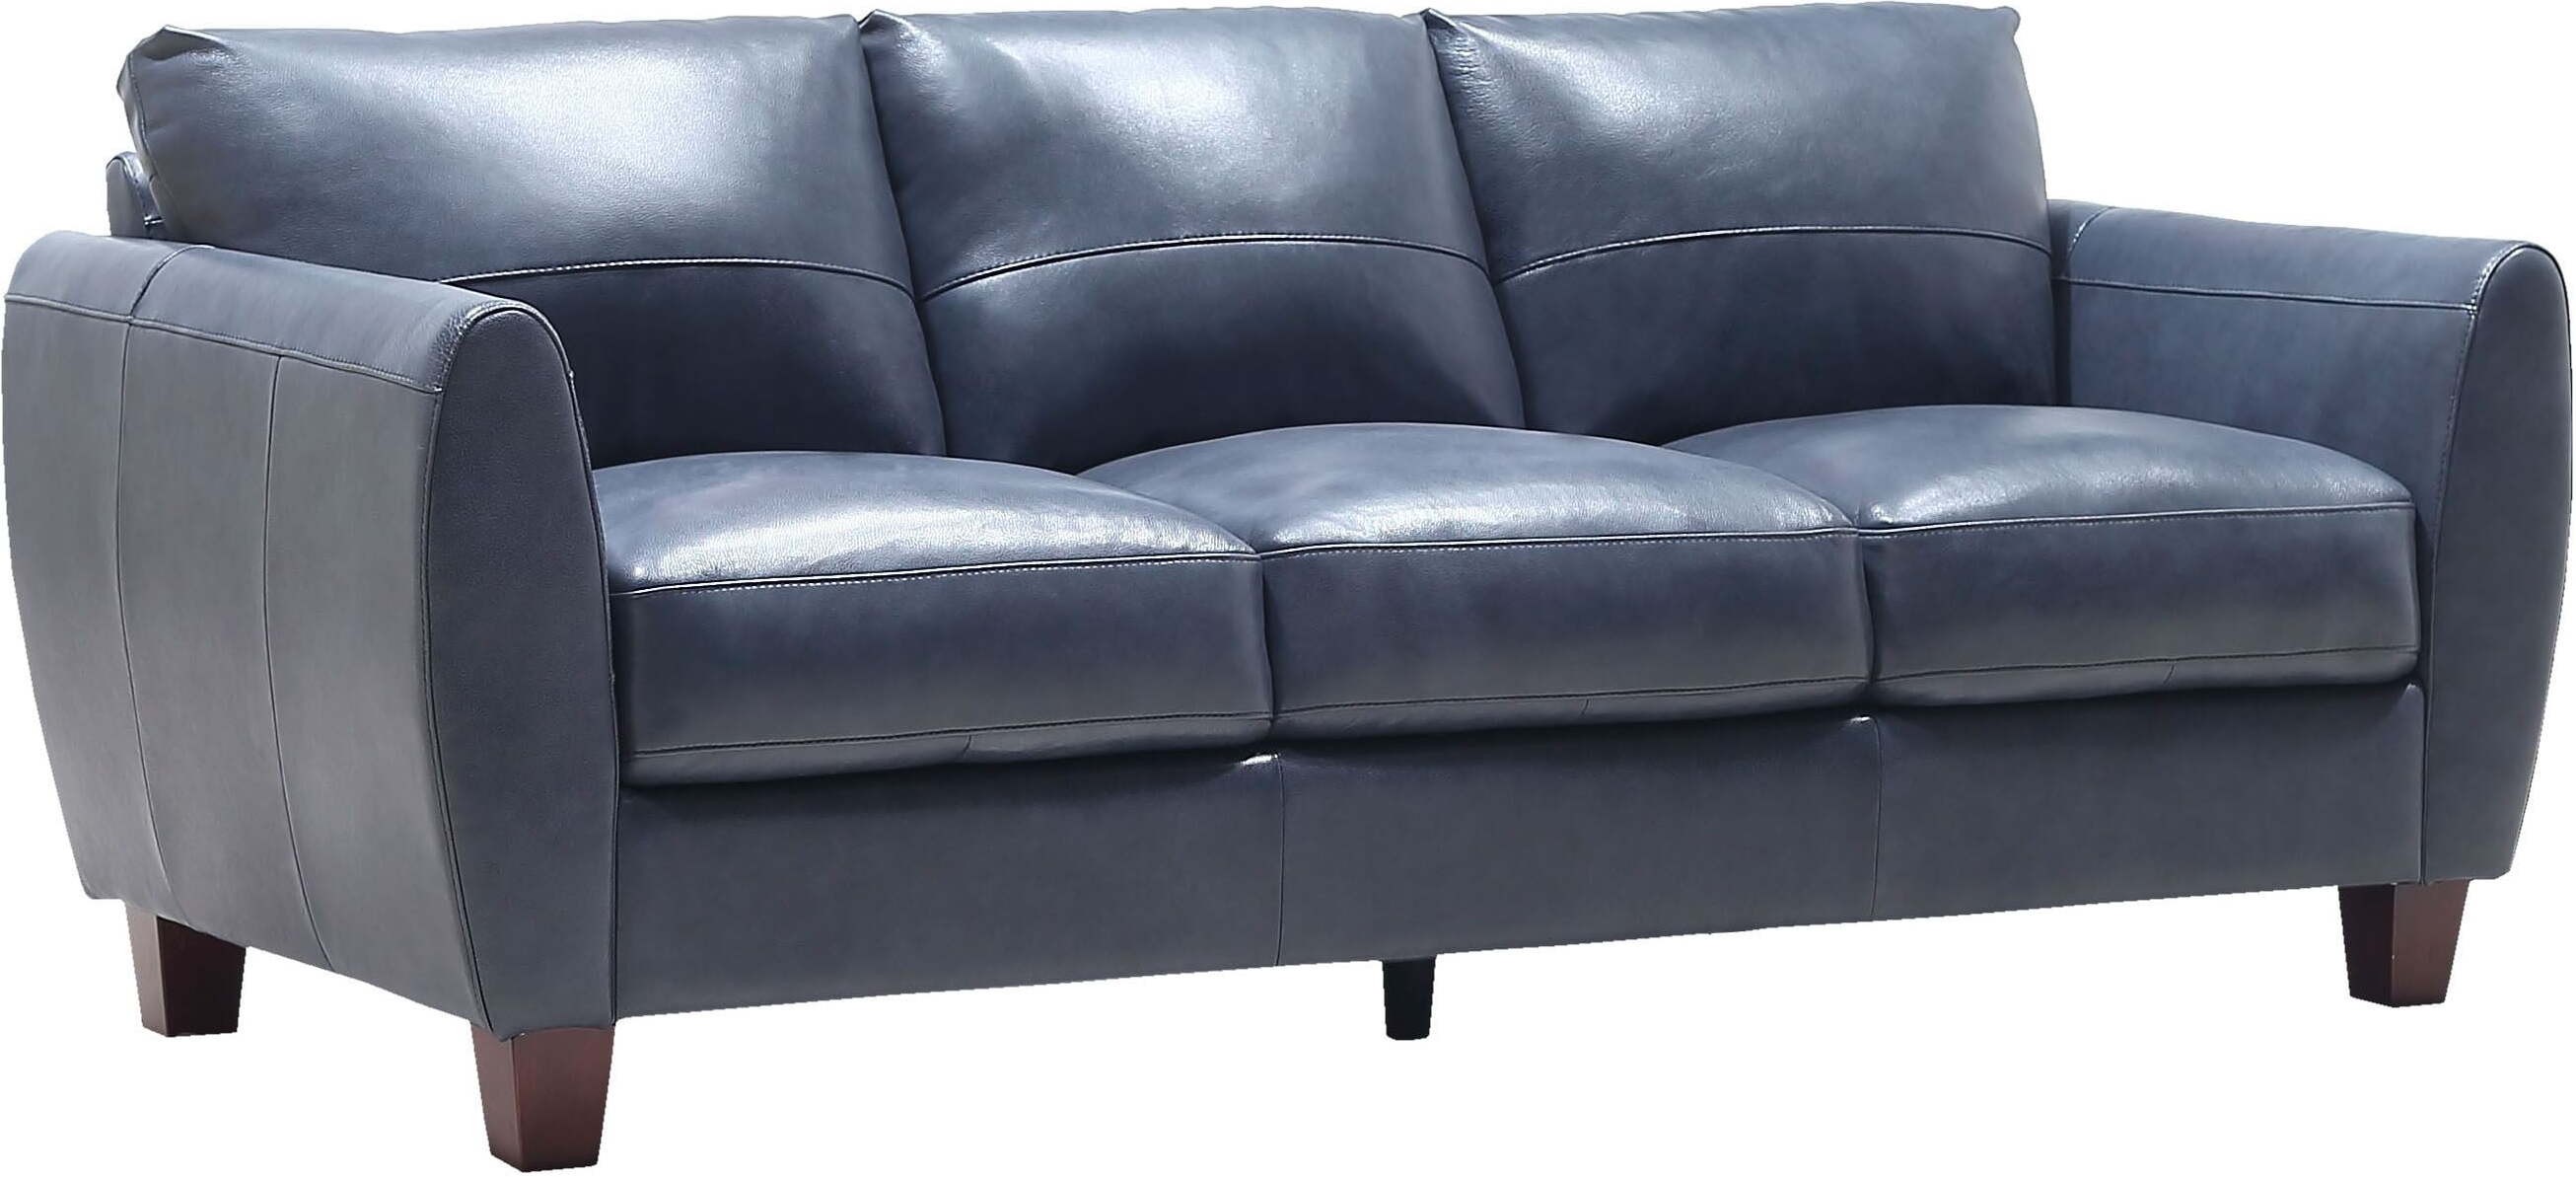 wayfair blue leather sofa